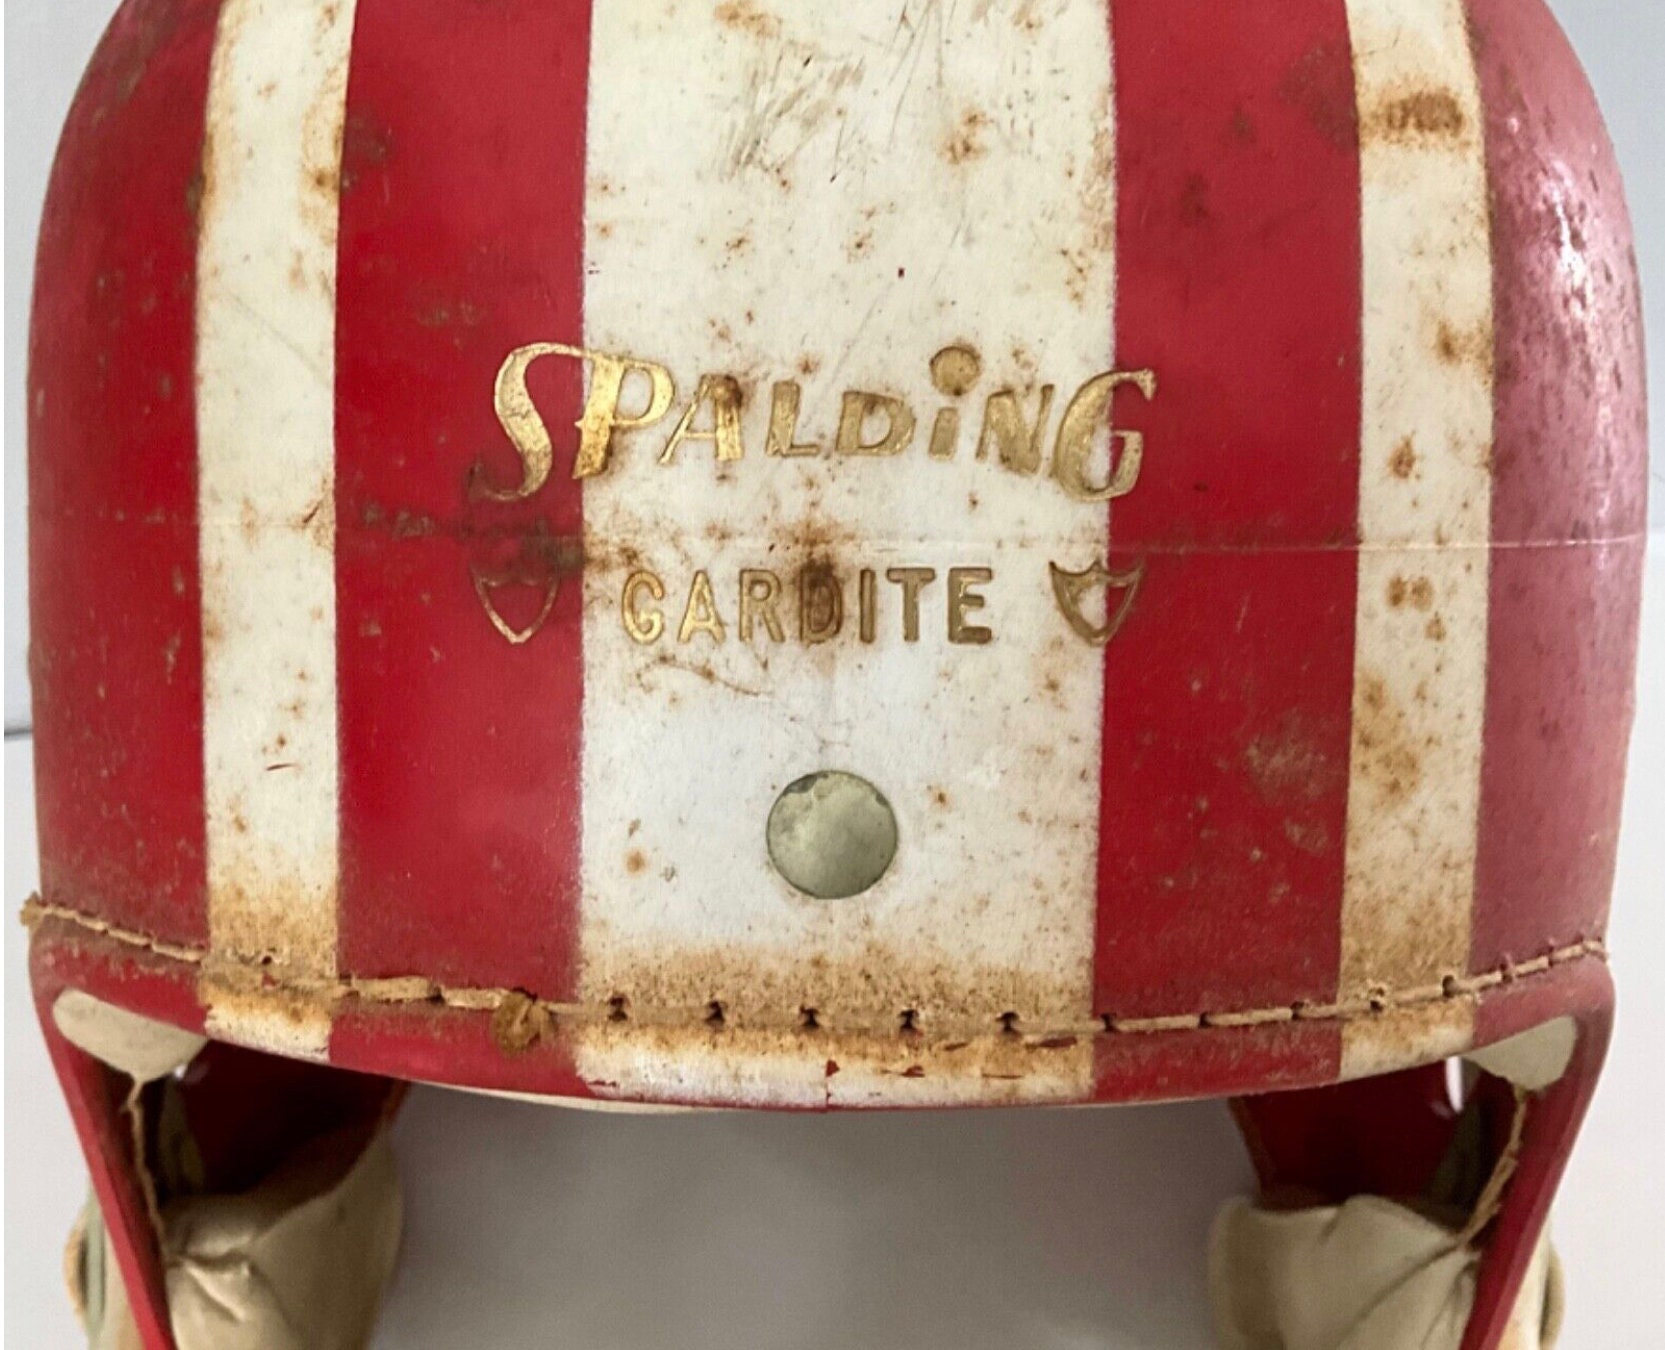 Rare Vintage Spalding Gardite jim Taylor 62-317 Small Football Helmet - Etsy